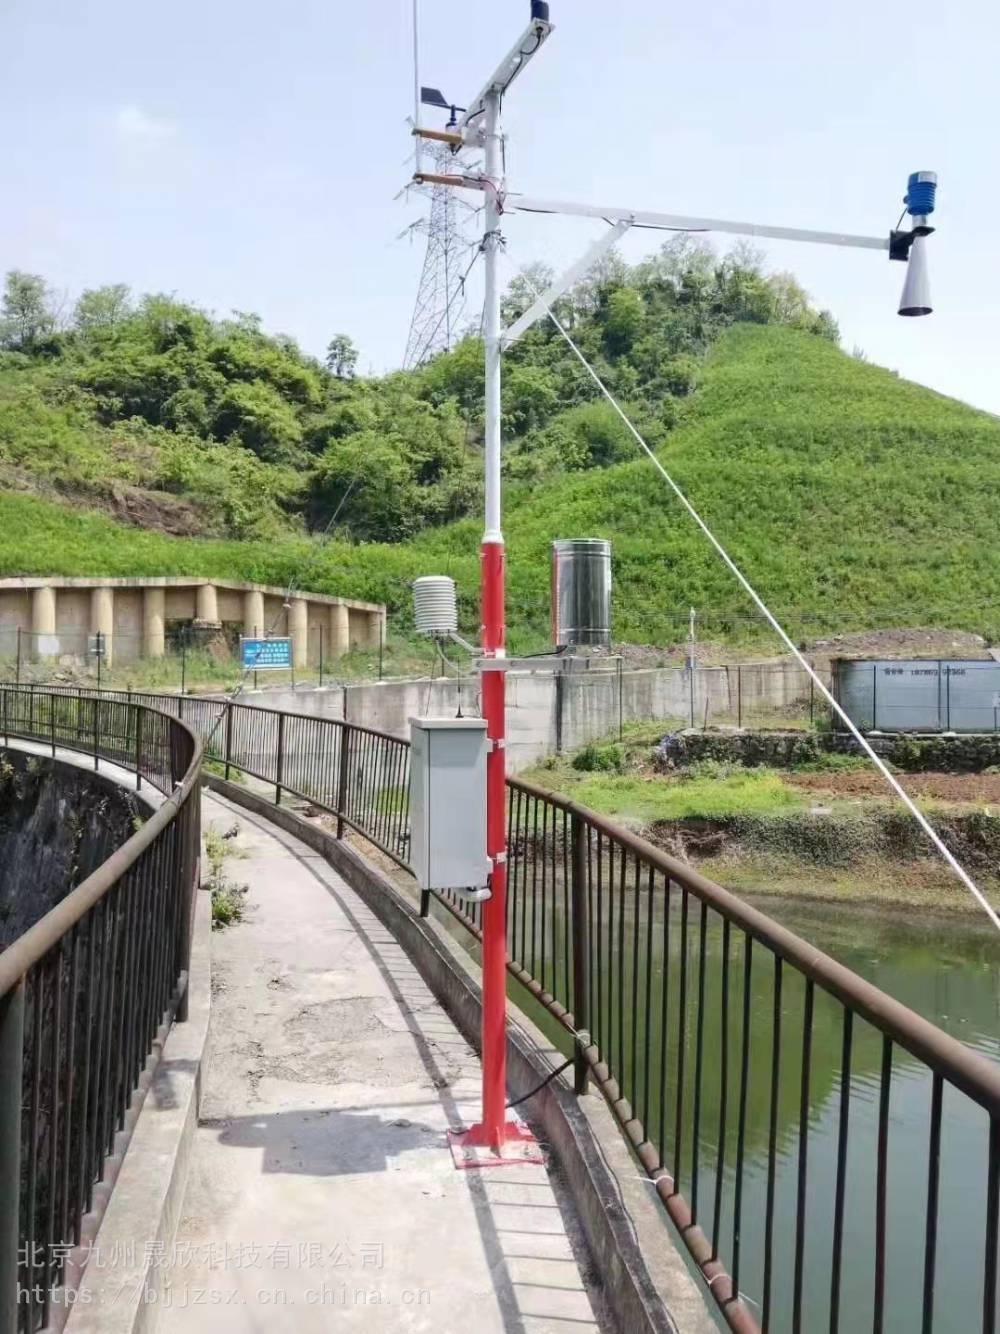 九州晟欣气象视频雨量一体监测站型号JZ-YL可安装调试培训